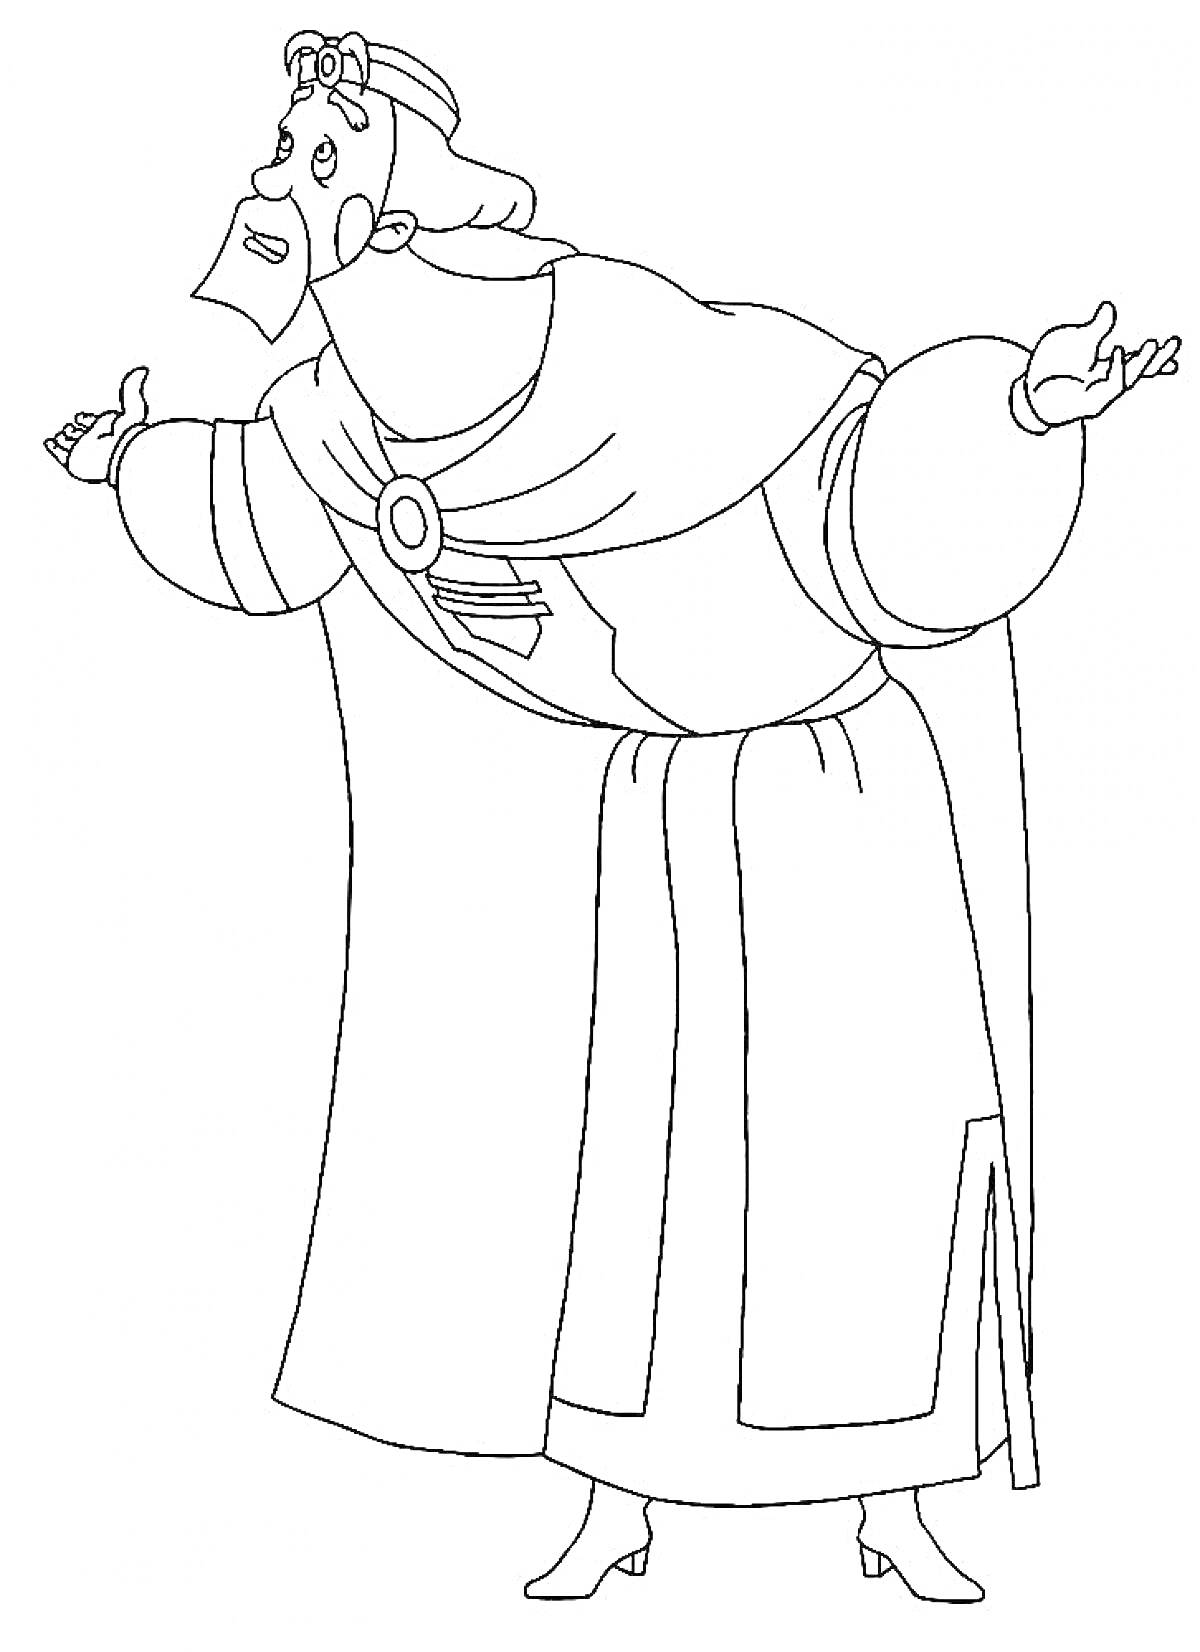 Раскраска Человек в длинном халате с короной на голове и украшением на груди, с поднятыми руками